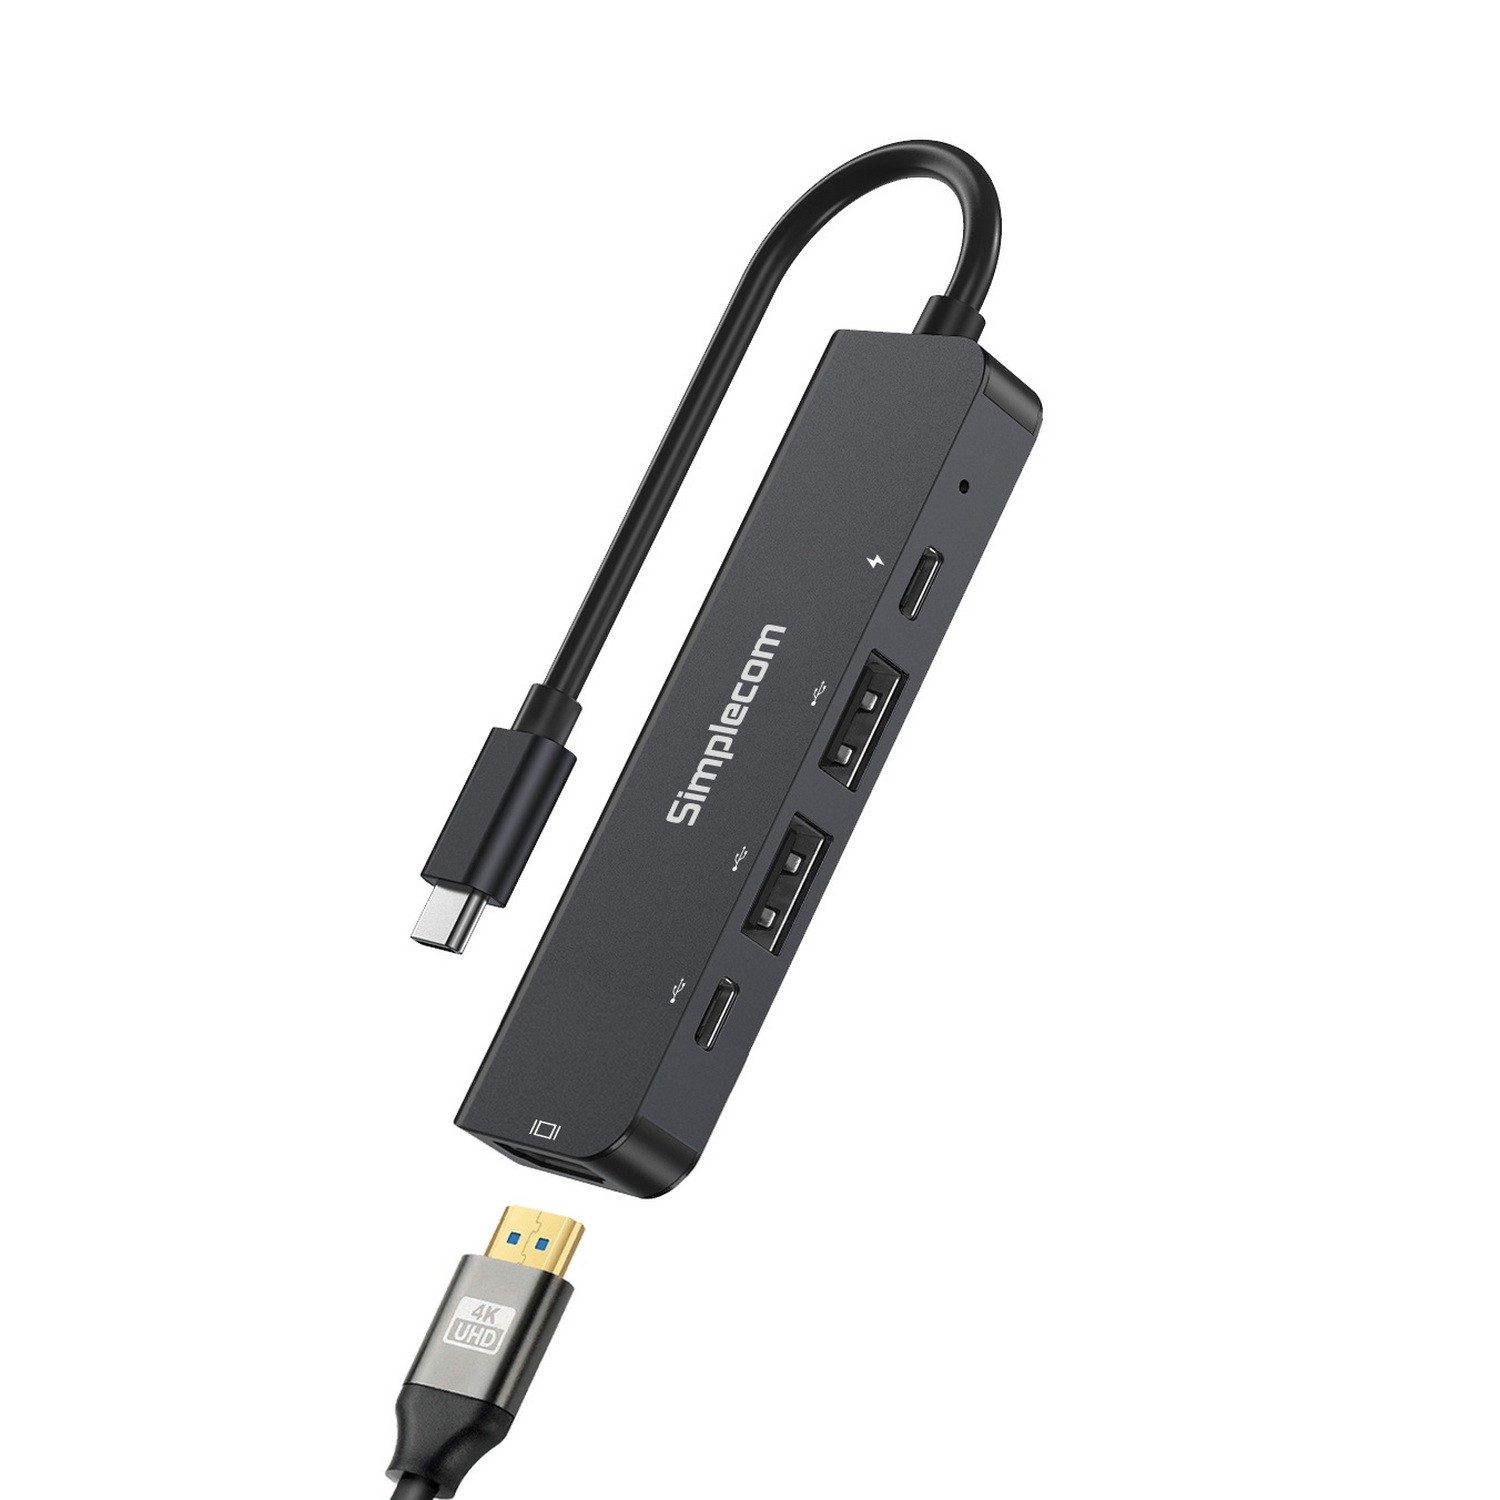 Simplecom CH550 USB-C 5-in-1 Multiport Adapter USB Hub PD HDMI 2.0 4K@60Hz